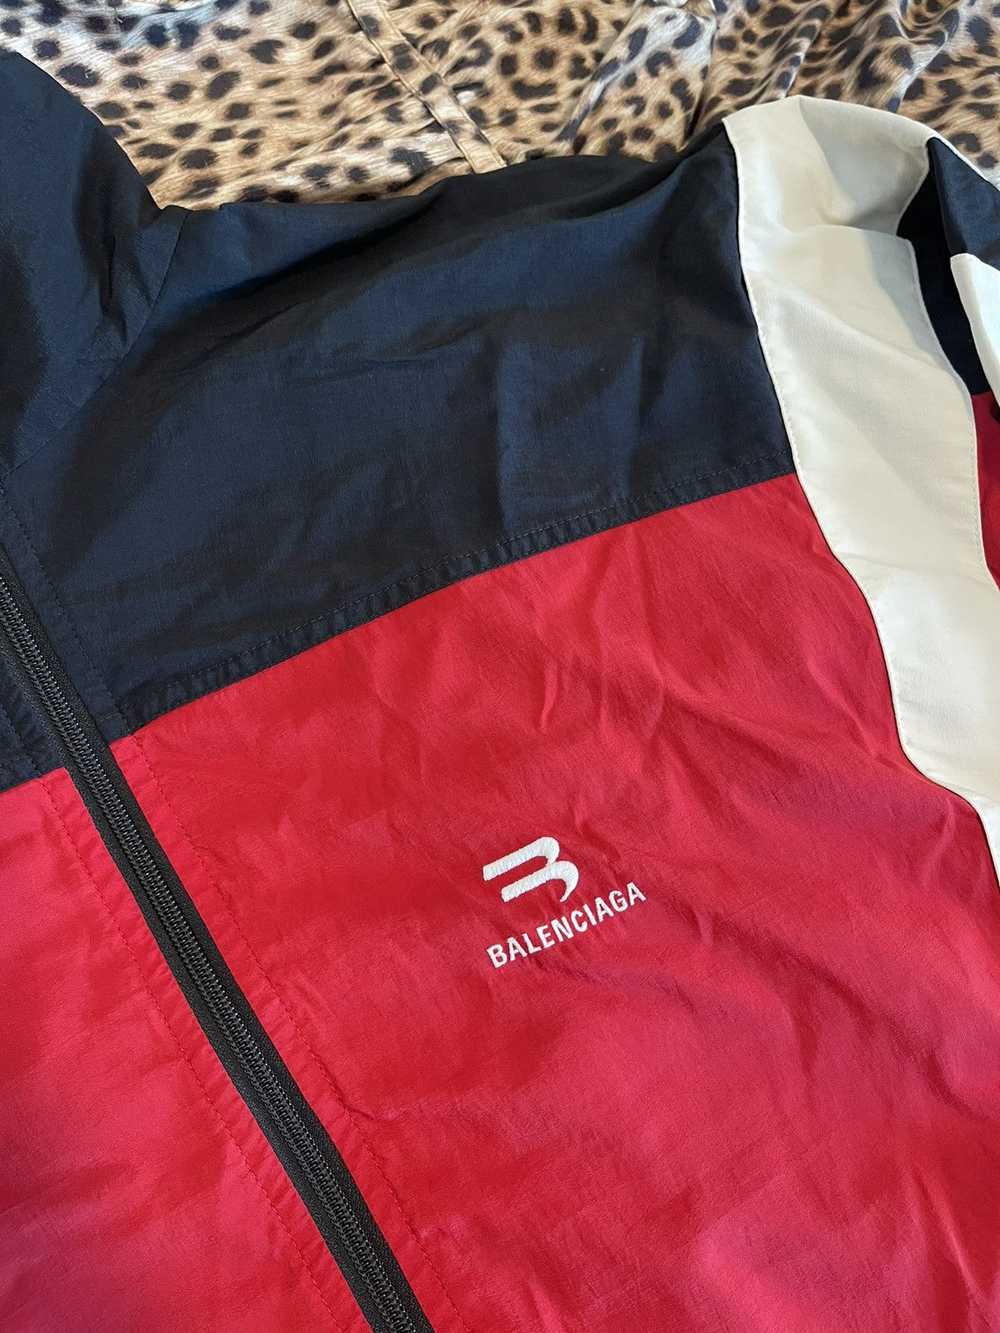 Balenciaga Balenciaga track jacket - image 4